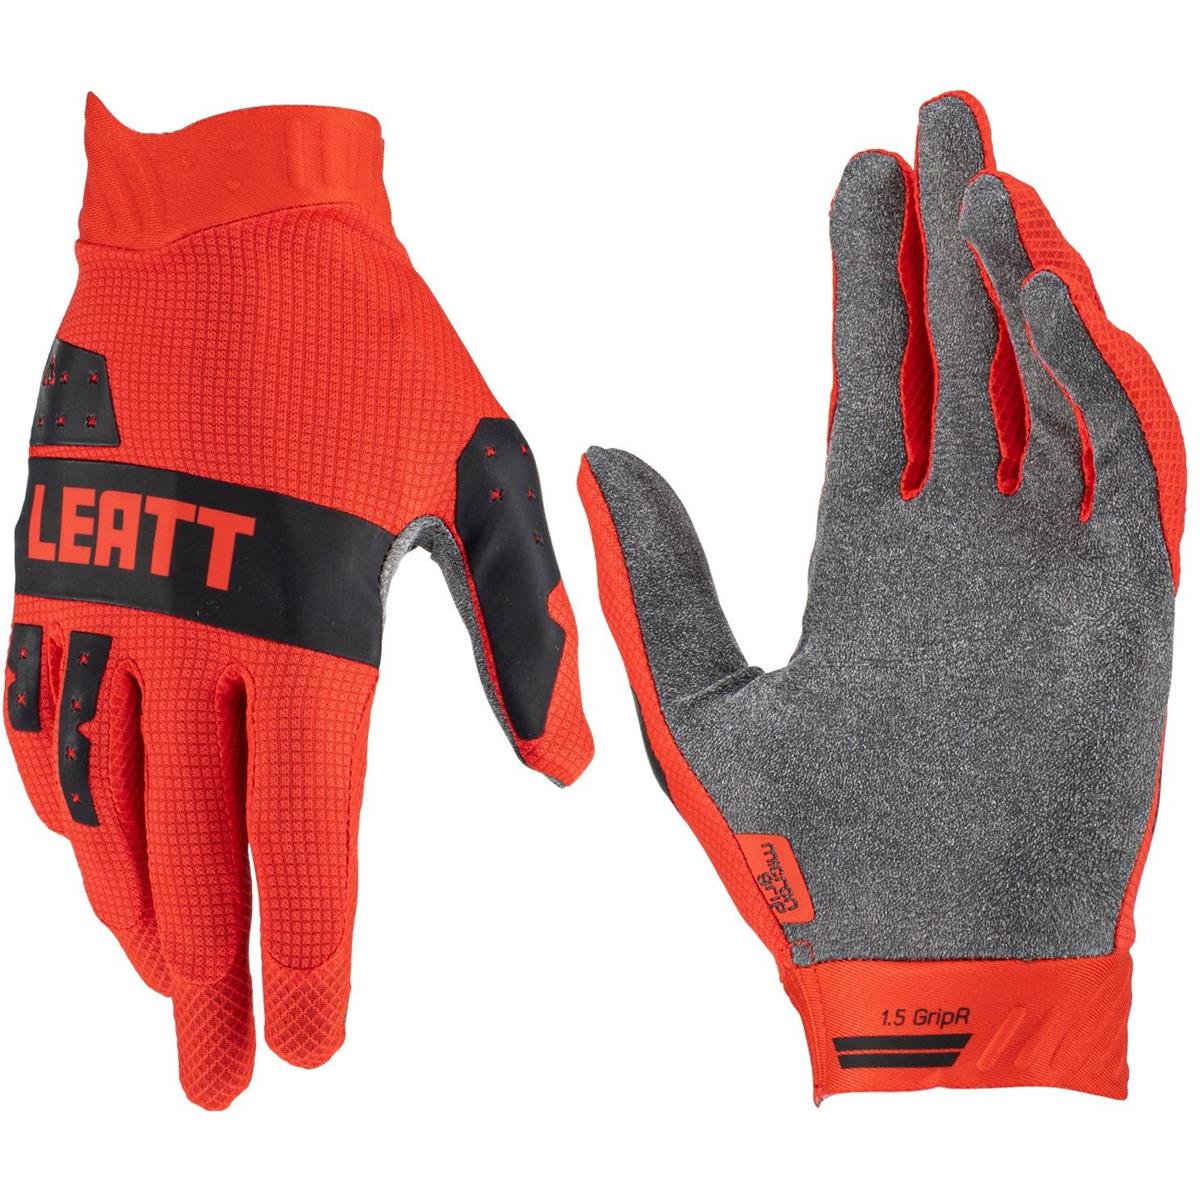 Leatt Gloves Moto 1.5 GripR V23 Red